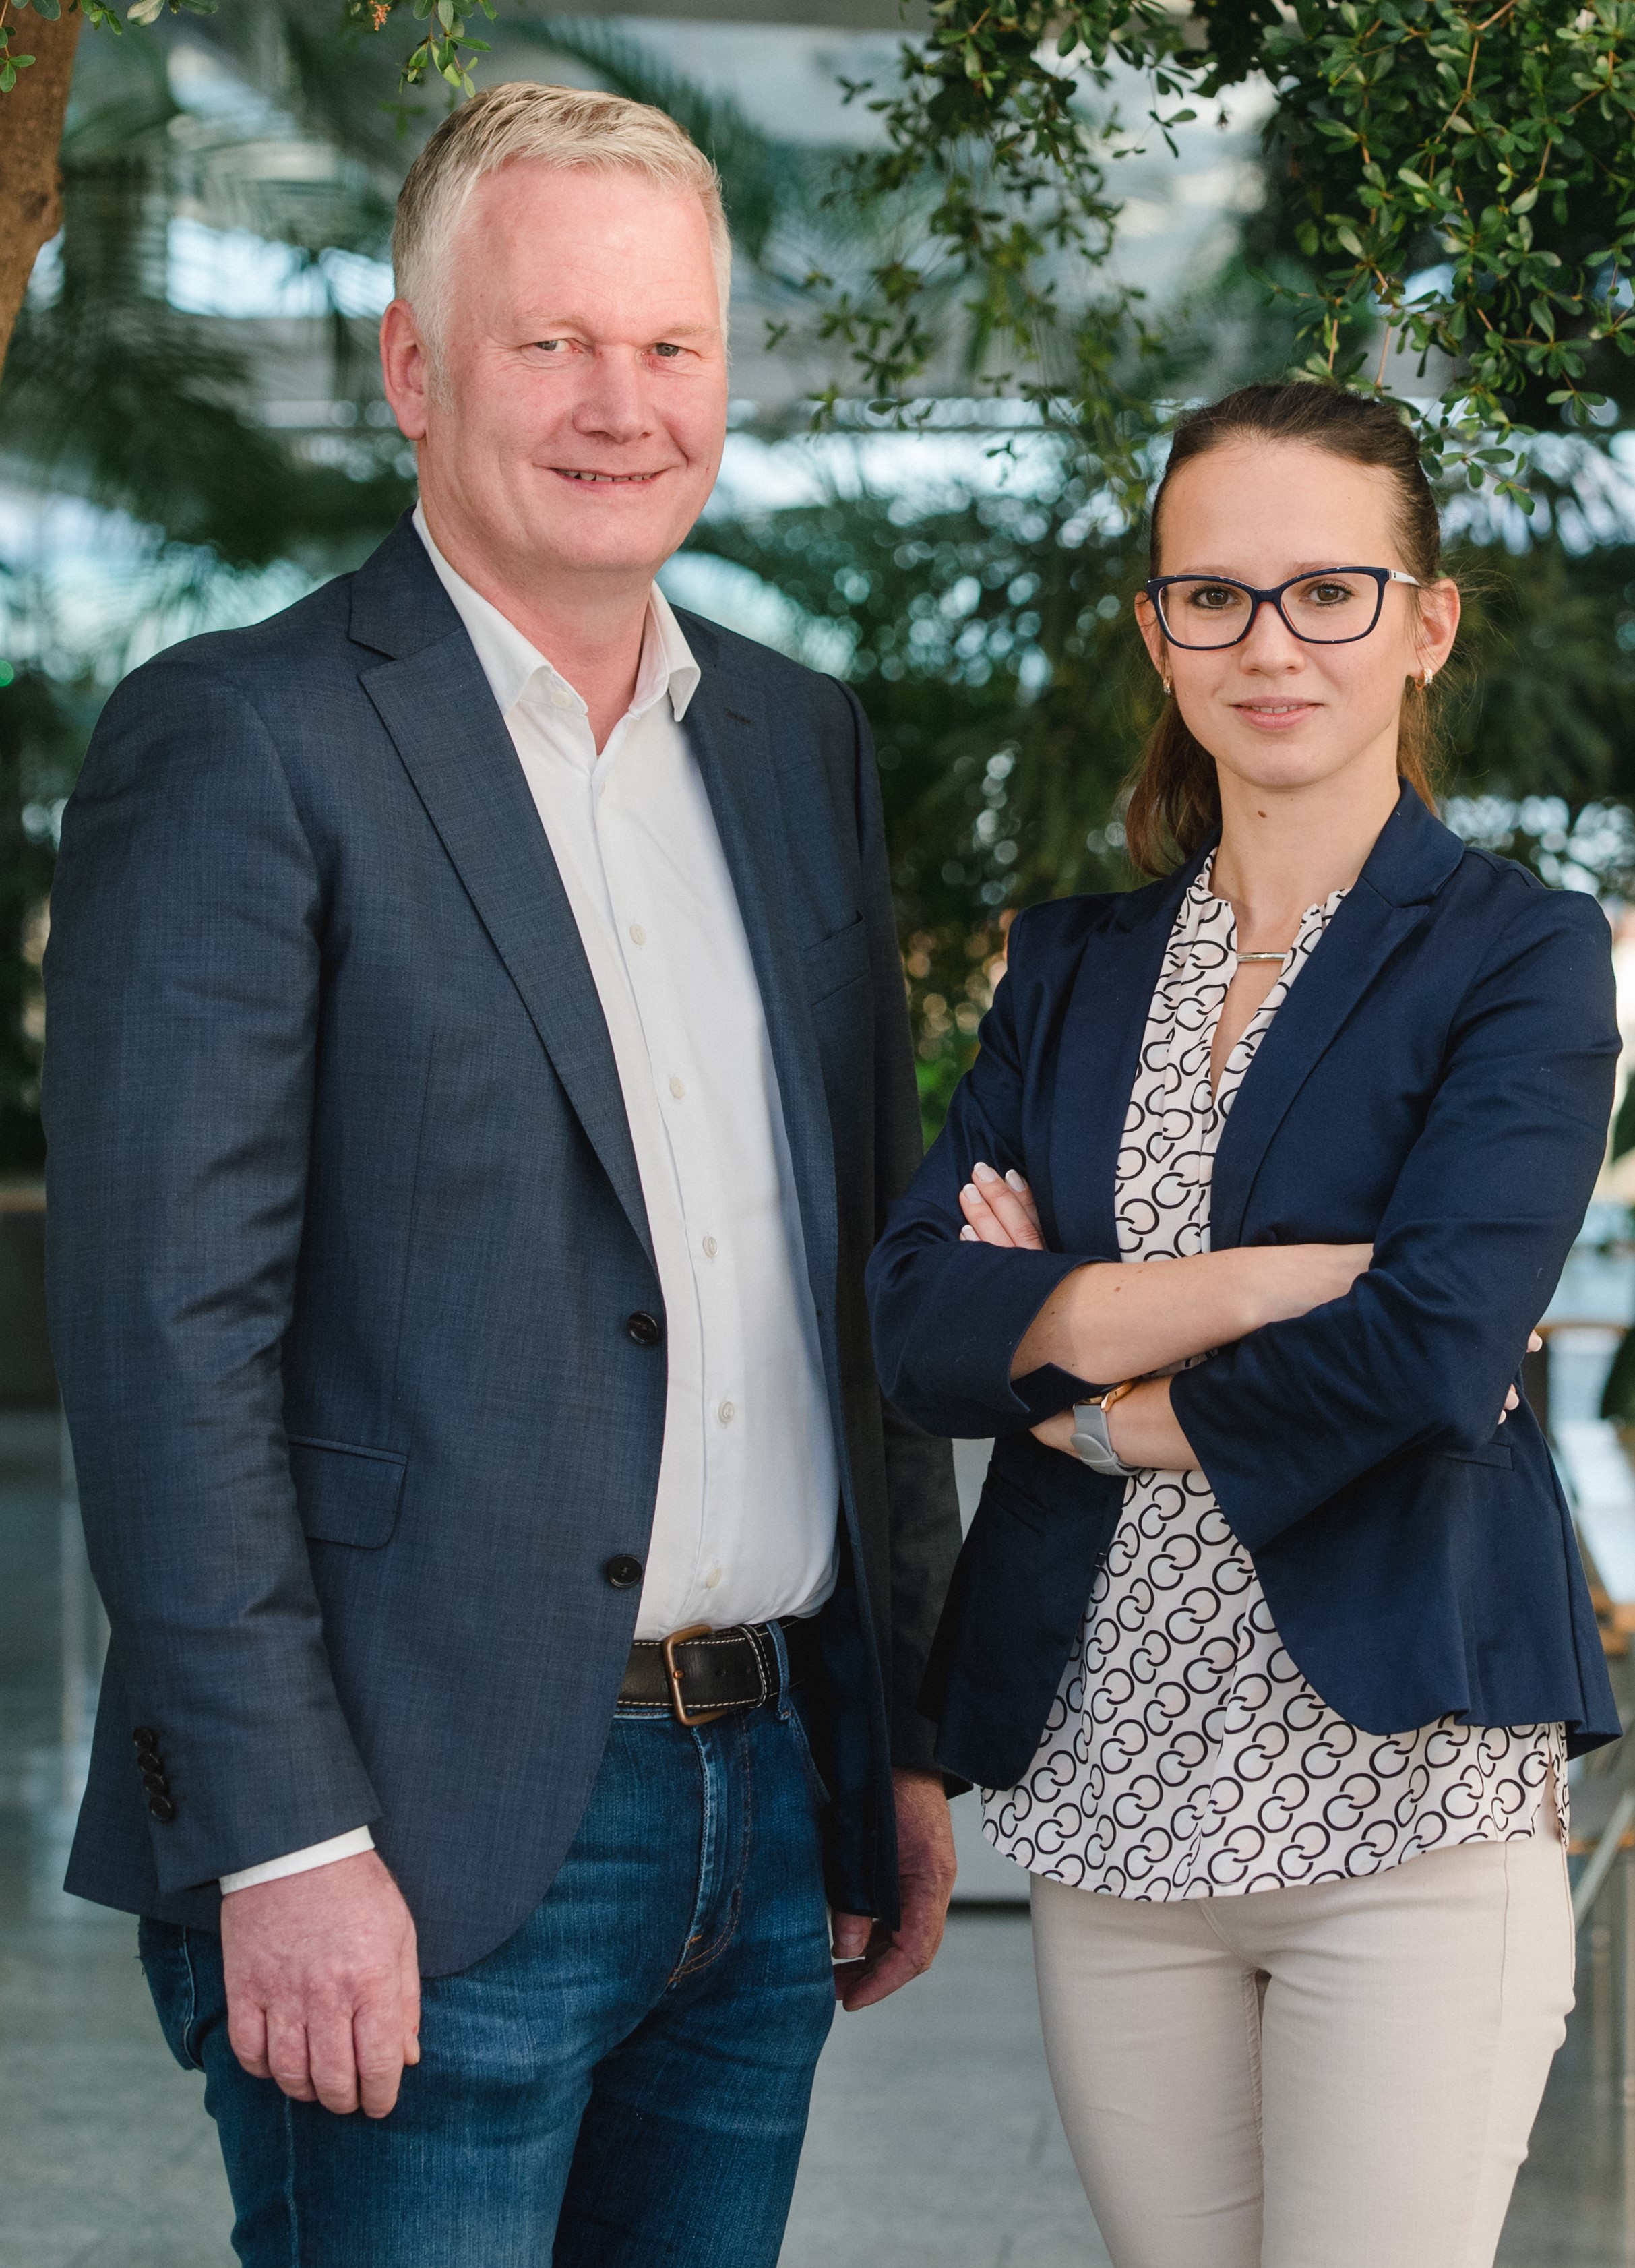 Olaf von Lehmden und Janina Goller sind die beiden Geschäftsführer der BALANCE EnviTec Bio-LNG GmbH